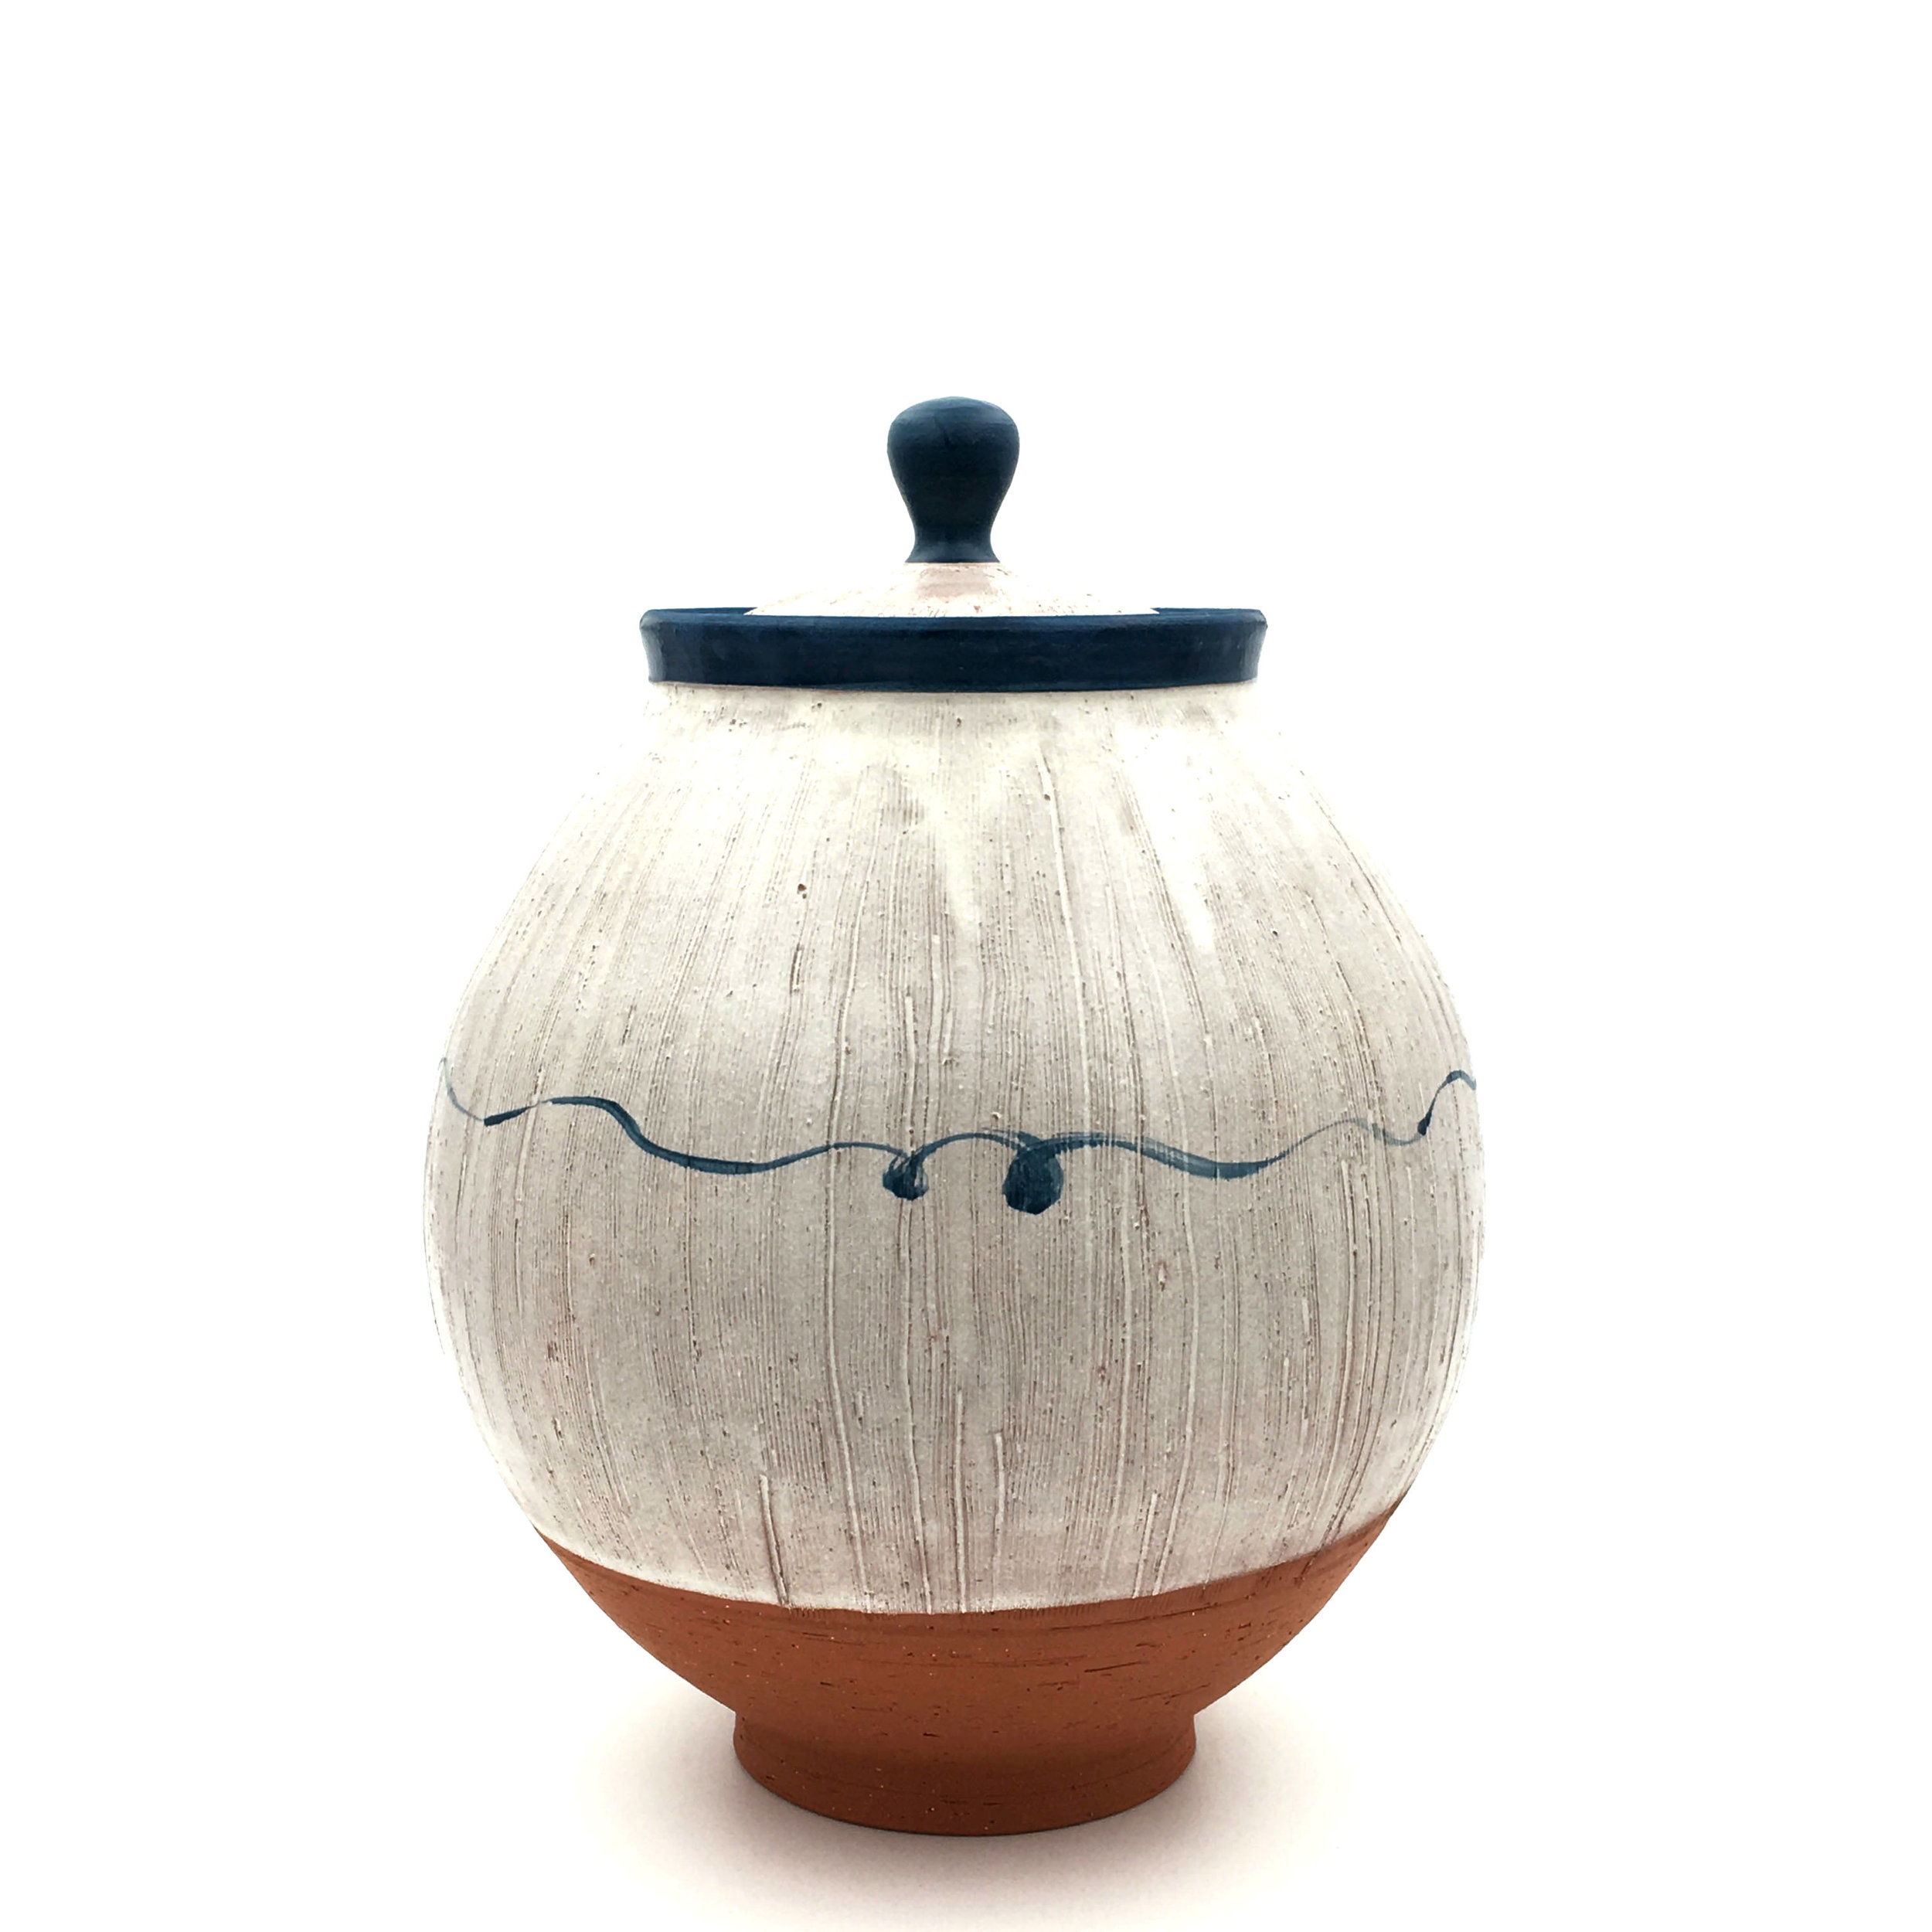    Lidded Jar,&nbsp; earthenware, 2016  